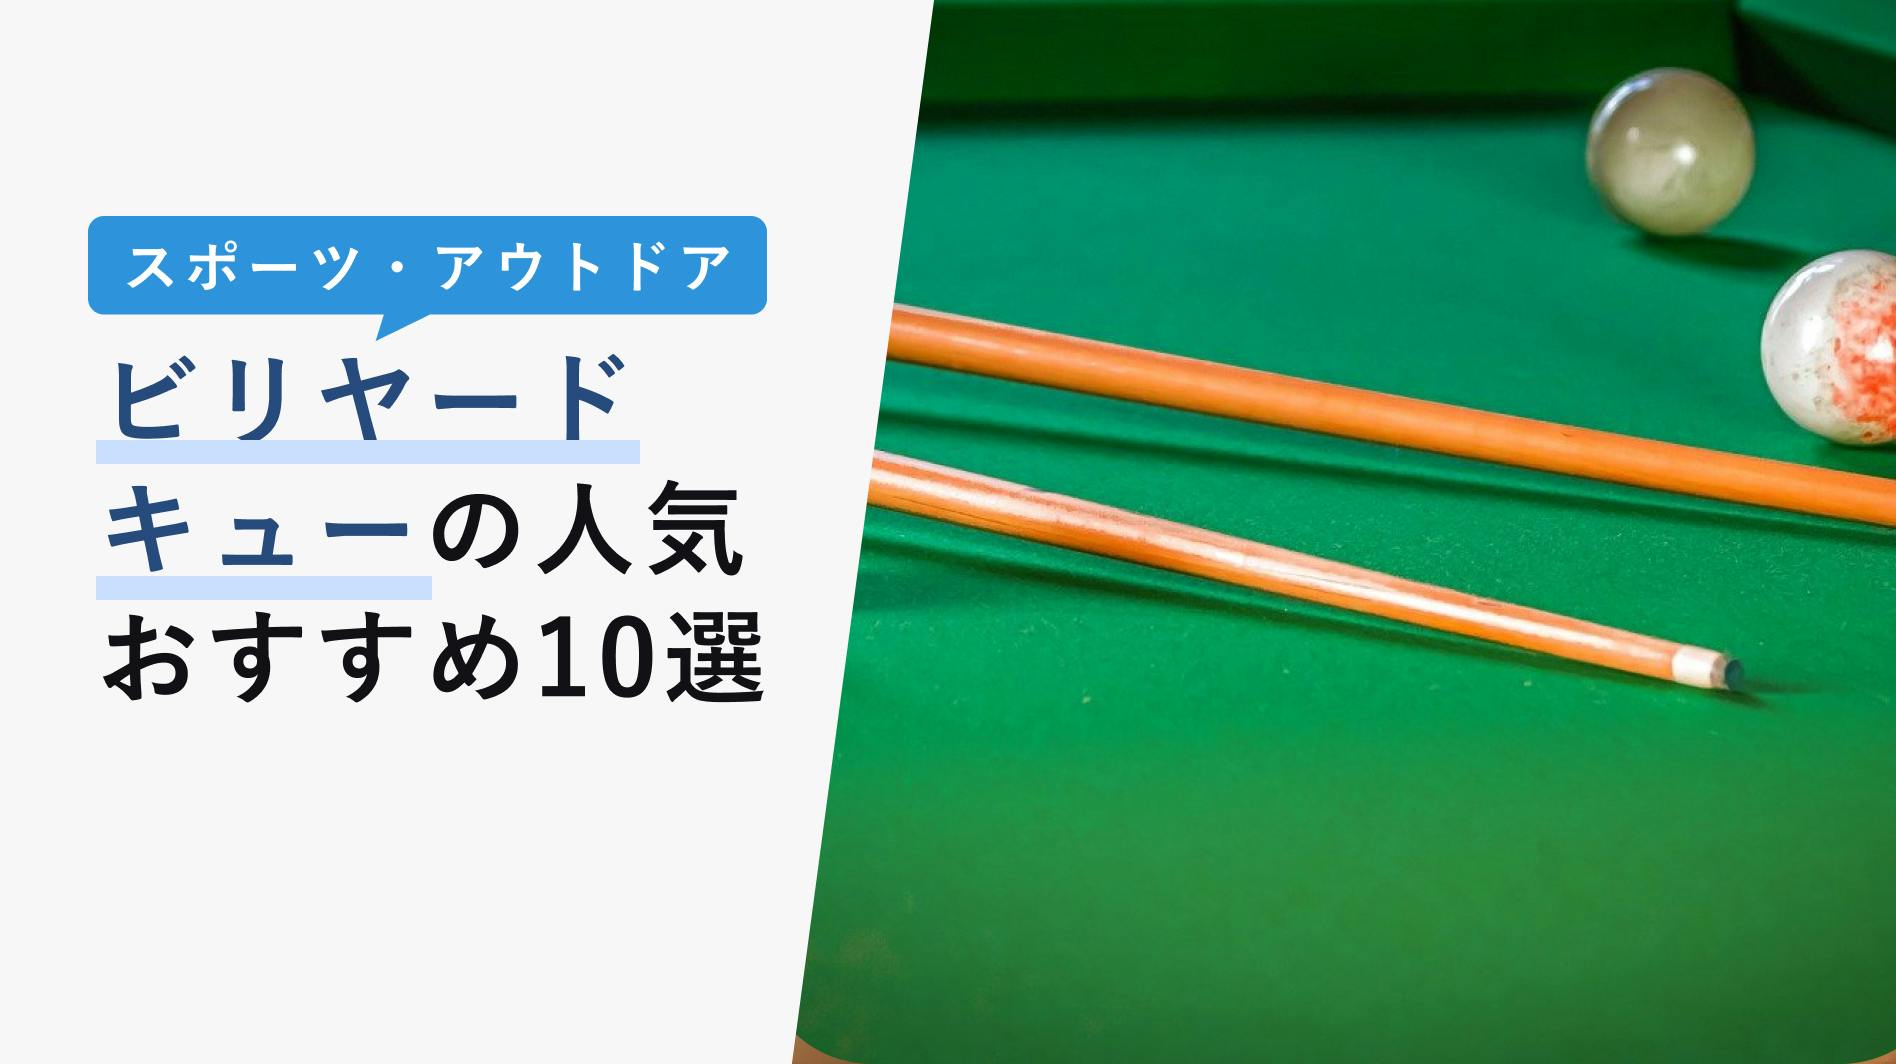 選ぶなら CAND JAPANビリヤードキュー プールキュー58インチ21オンス1